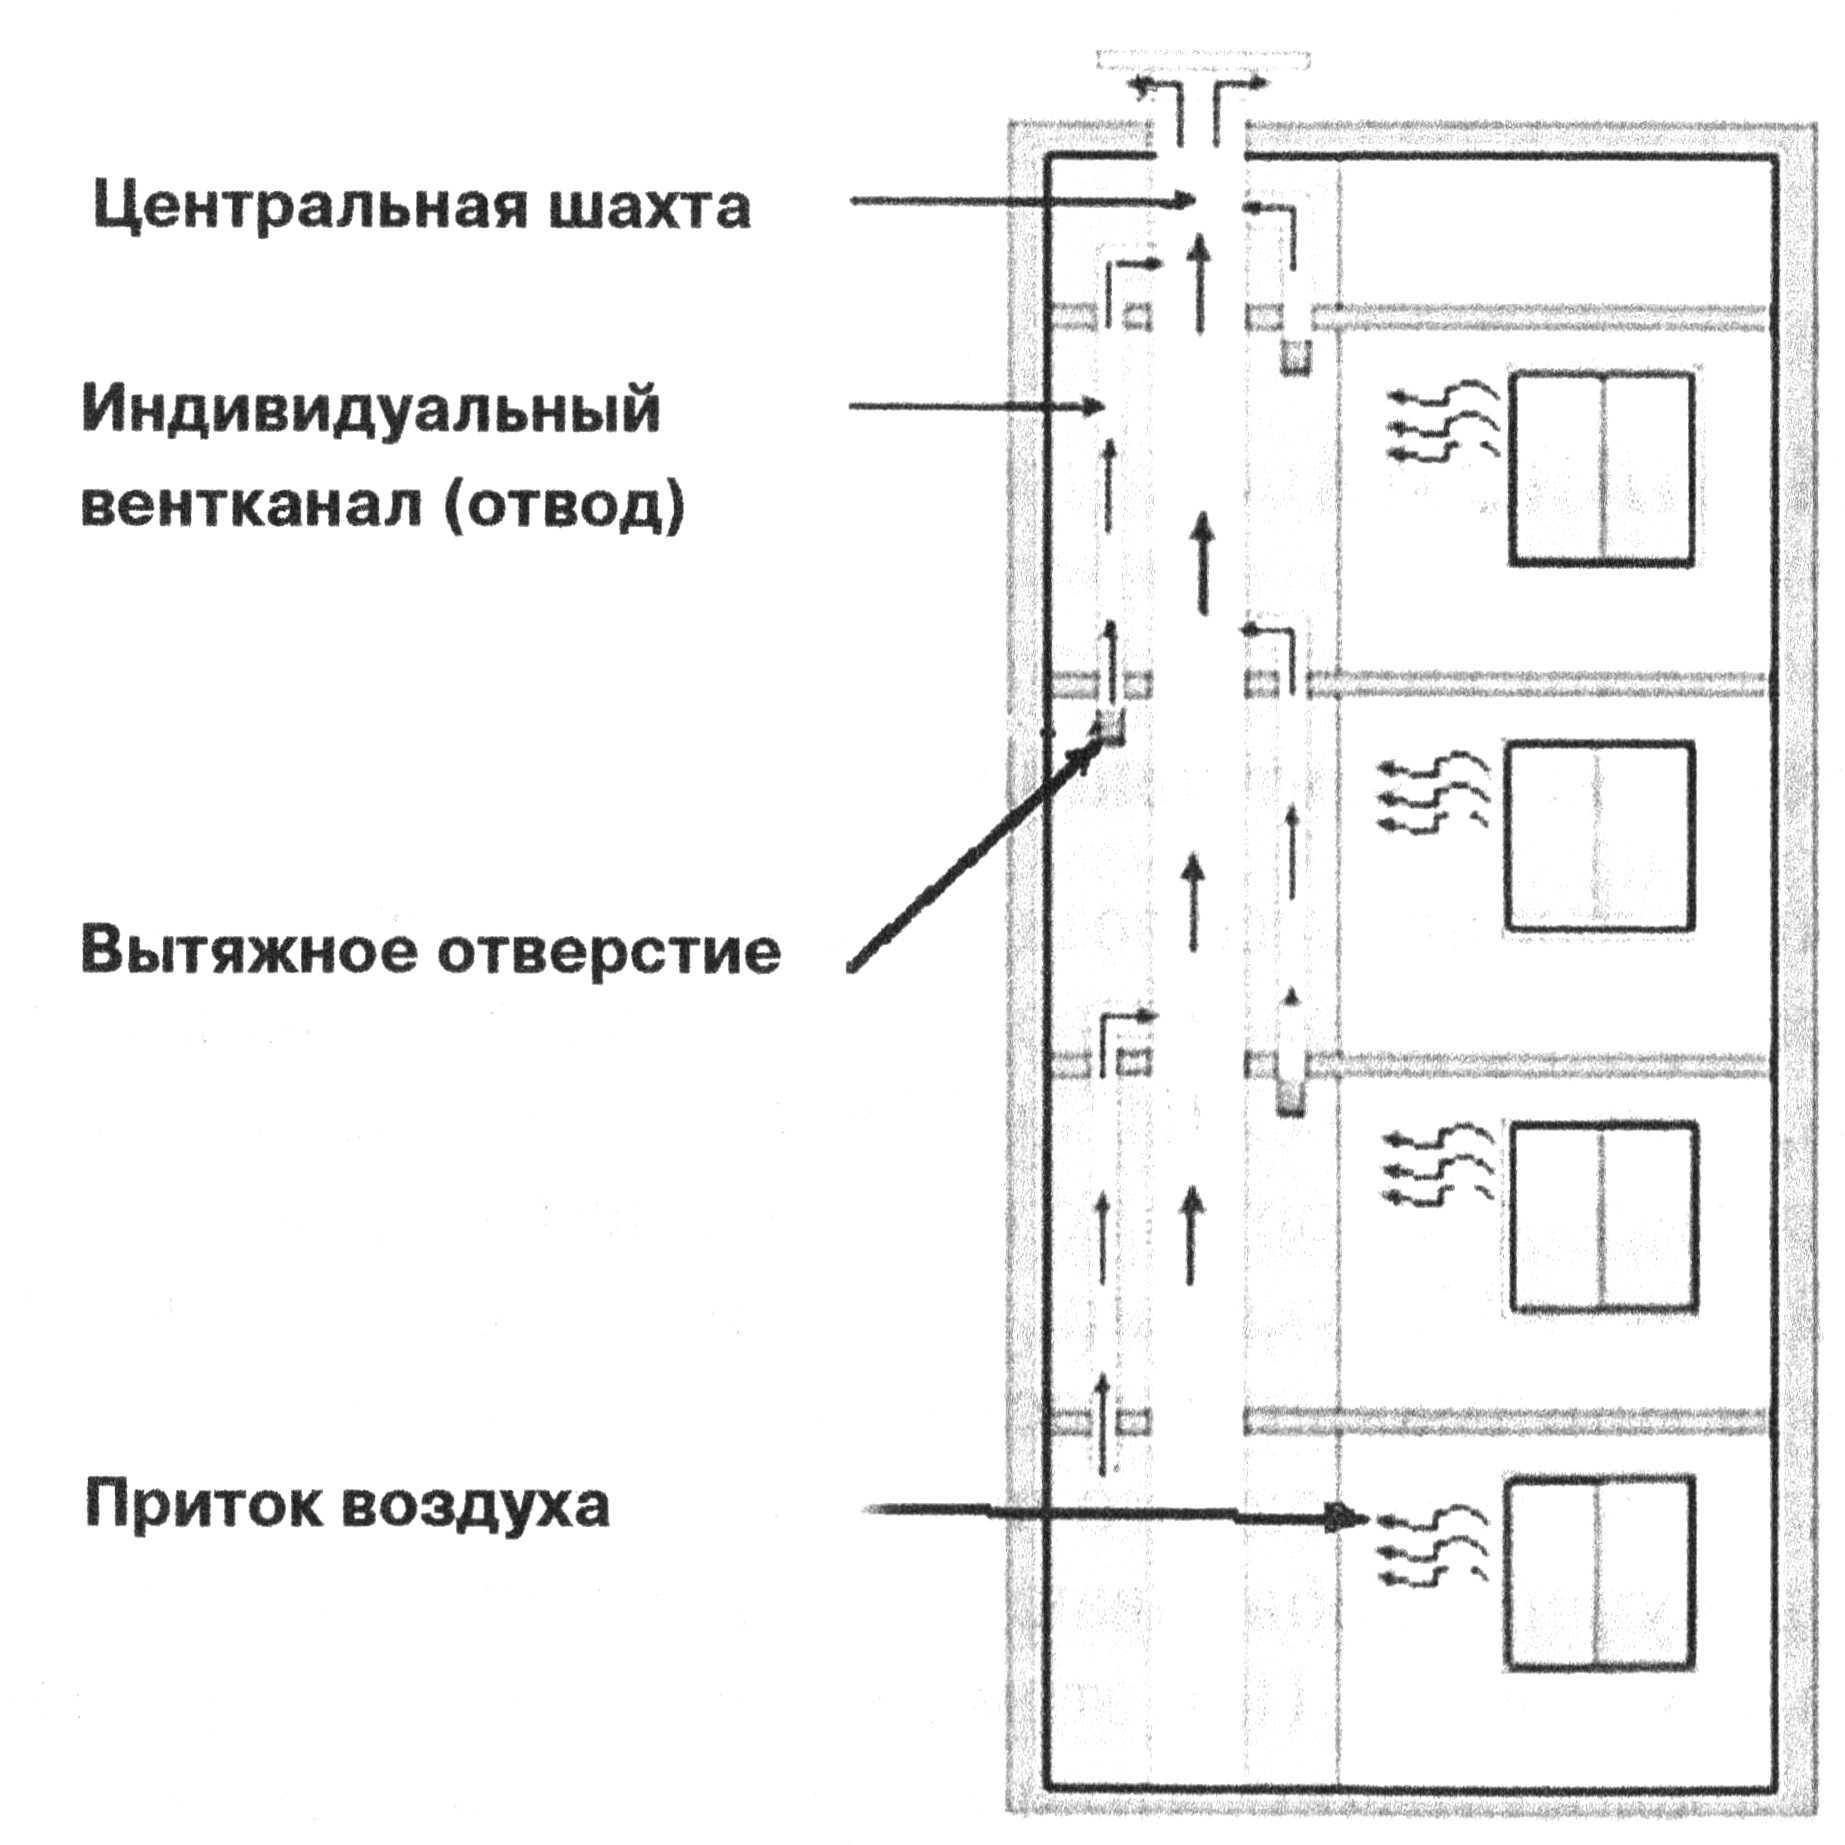 Как работает вентиляция в многоквартирном доме схема - портал о жкх